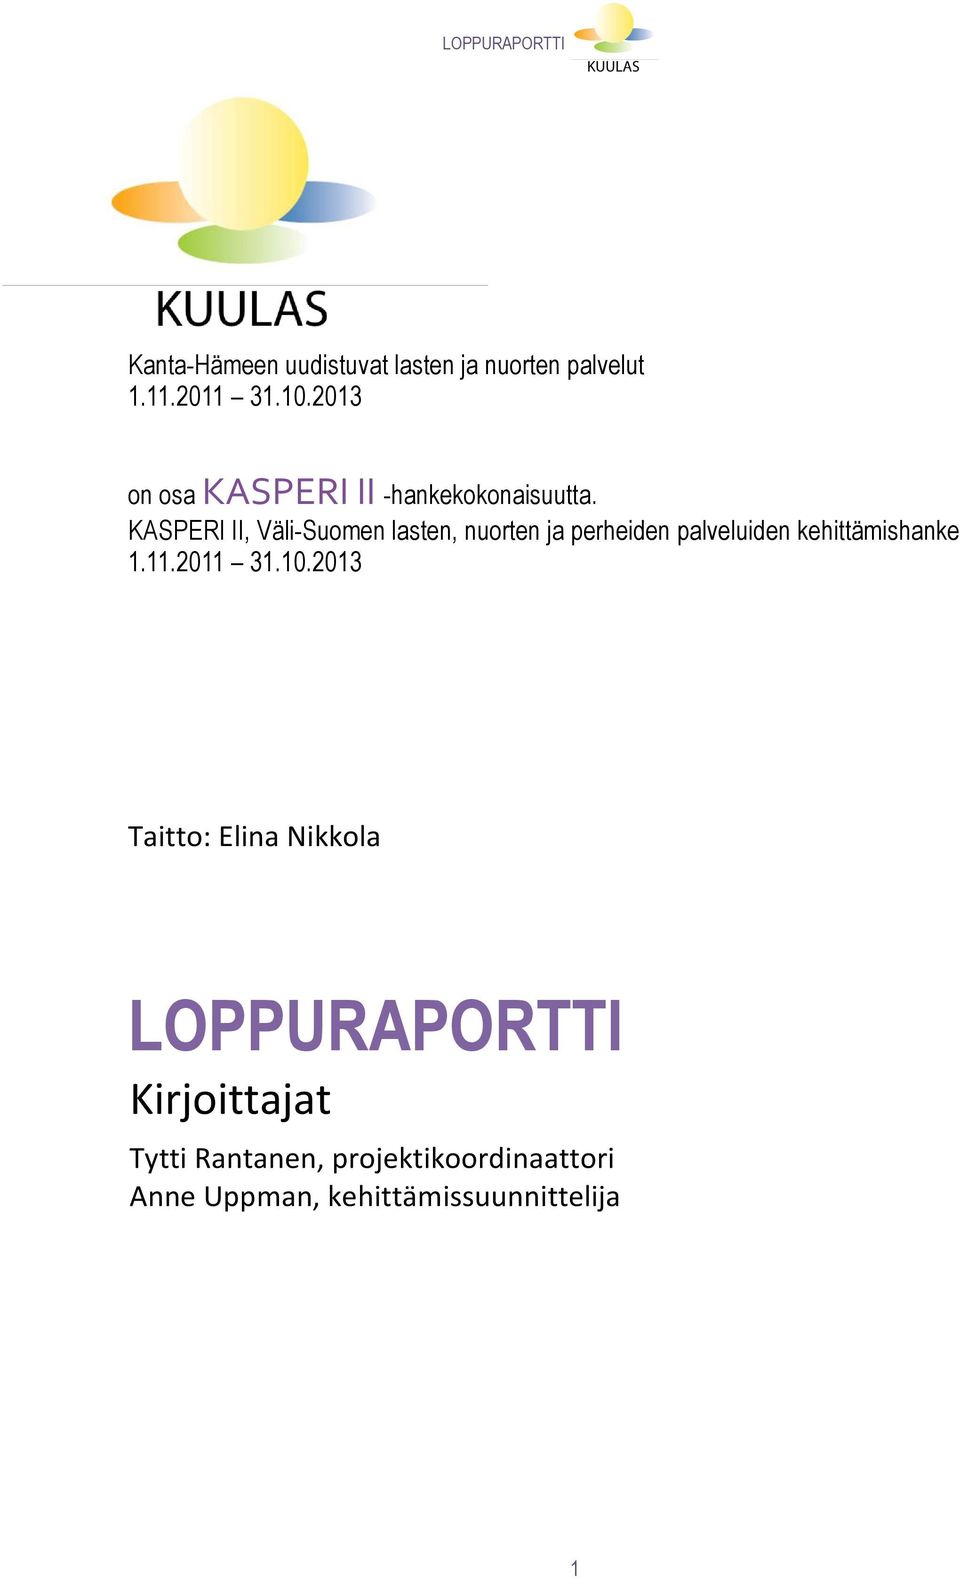 KASPERI II, Väli-Suomen lasten, nuorten ja perheiden palveluiden kehittämishanke 1.